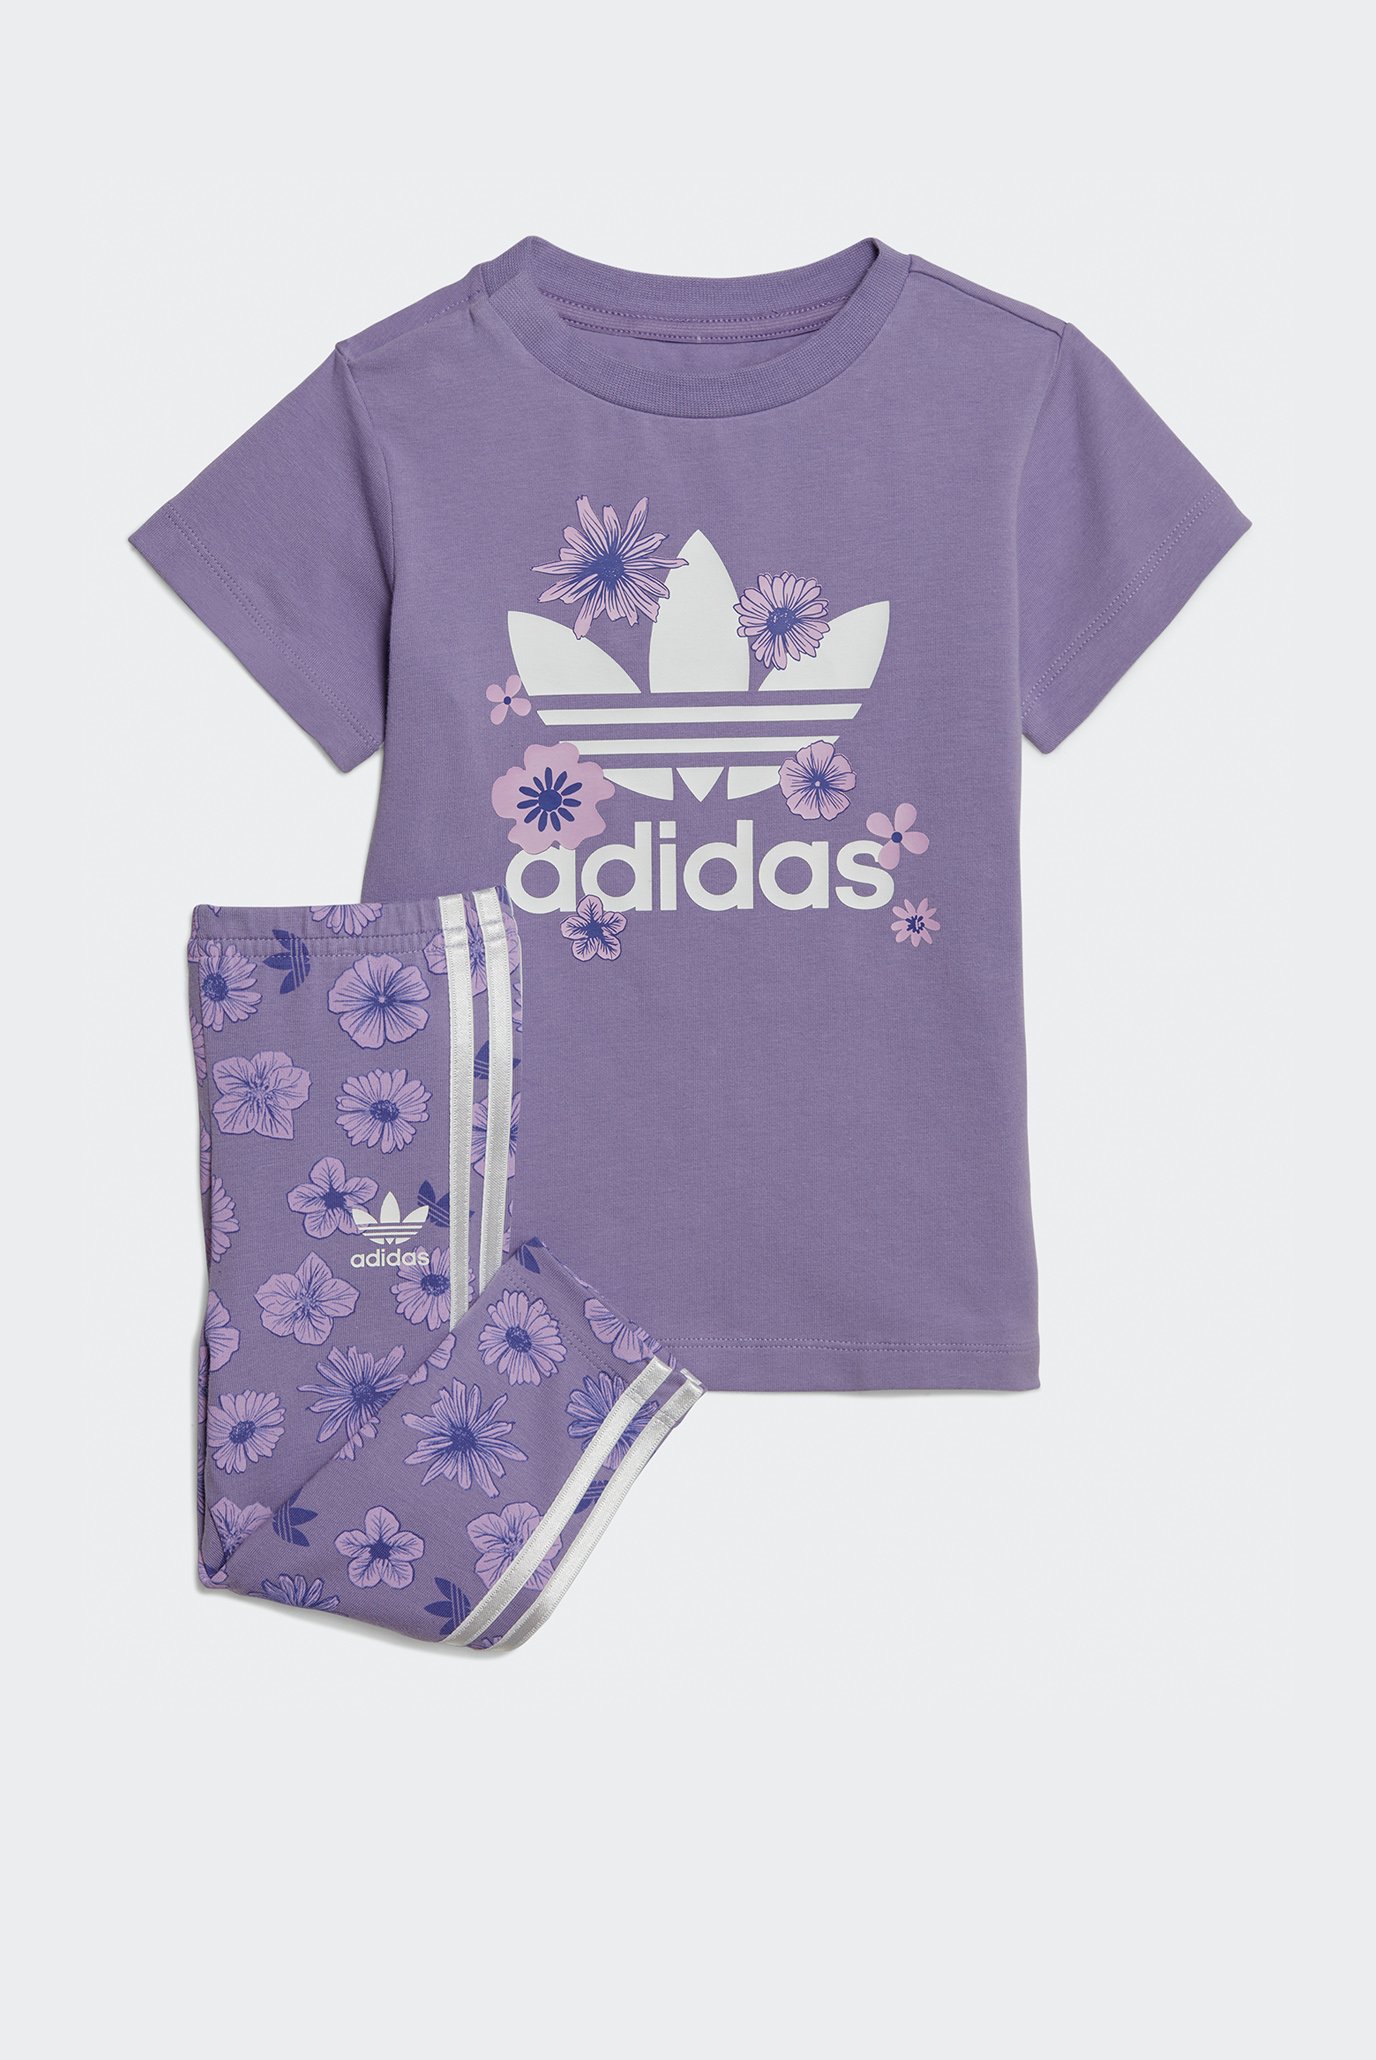 Дитячий фіолетовий комплект одягу (футболка, легінси) футболка та легінси Floral 1